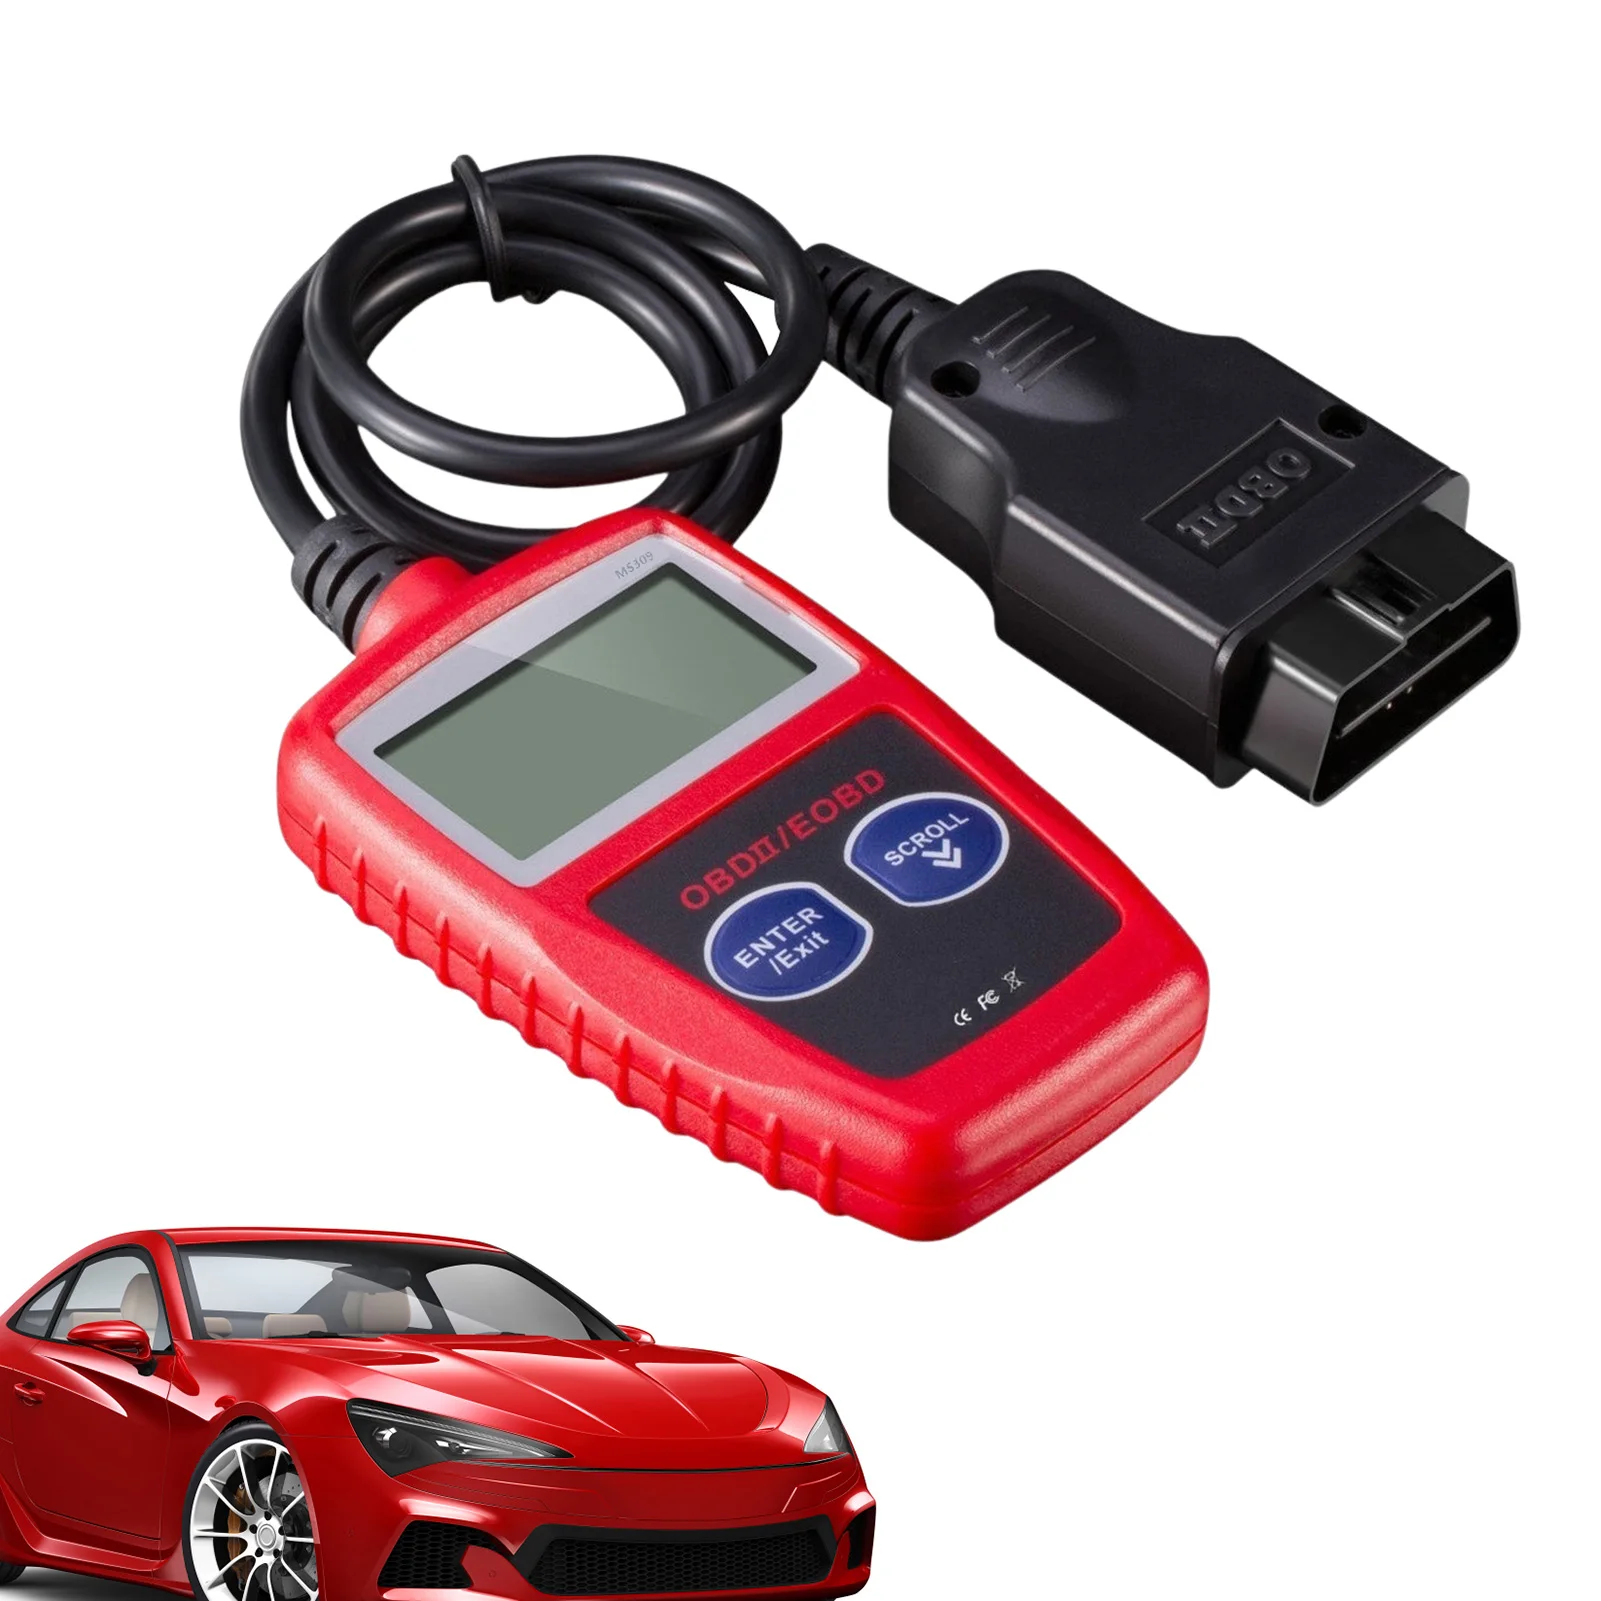 

MS309 OBD2 Scanner Car Code Reader OBD2 Scanner Car Code Reader Check Emission Monitor Status CAN Vehicles Diagnostic Scan Tool